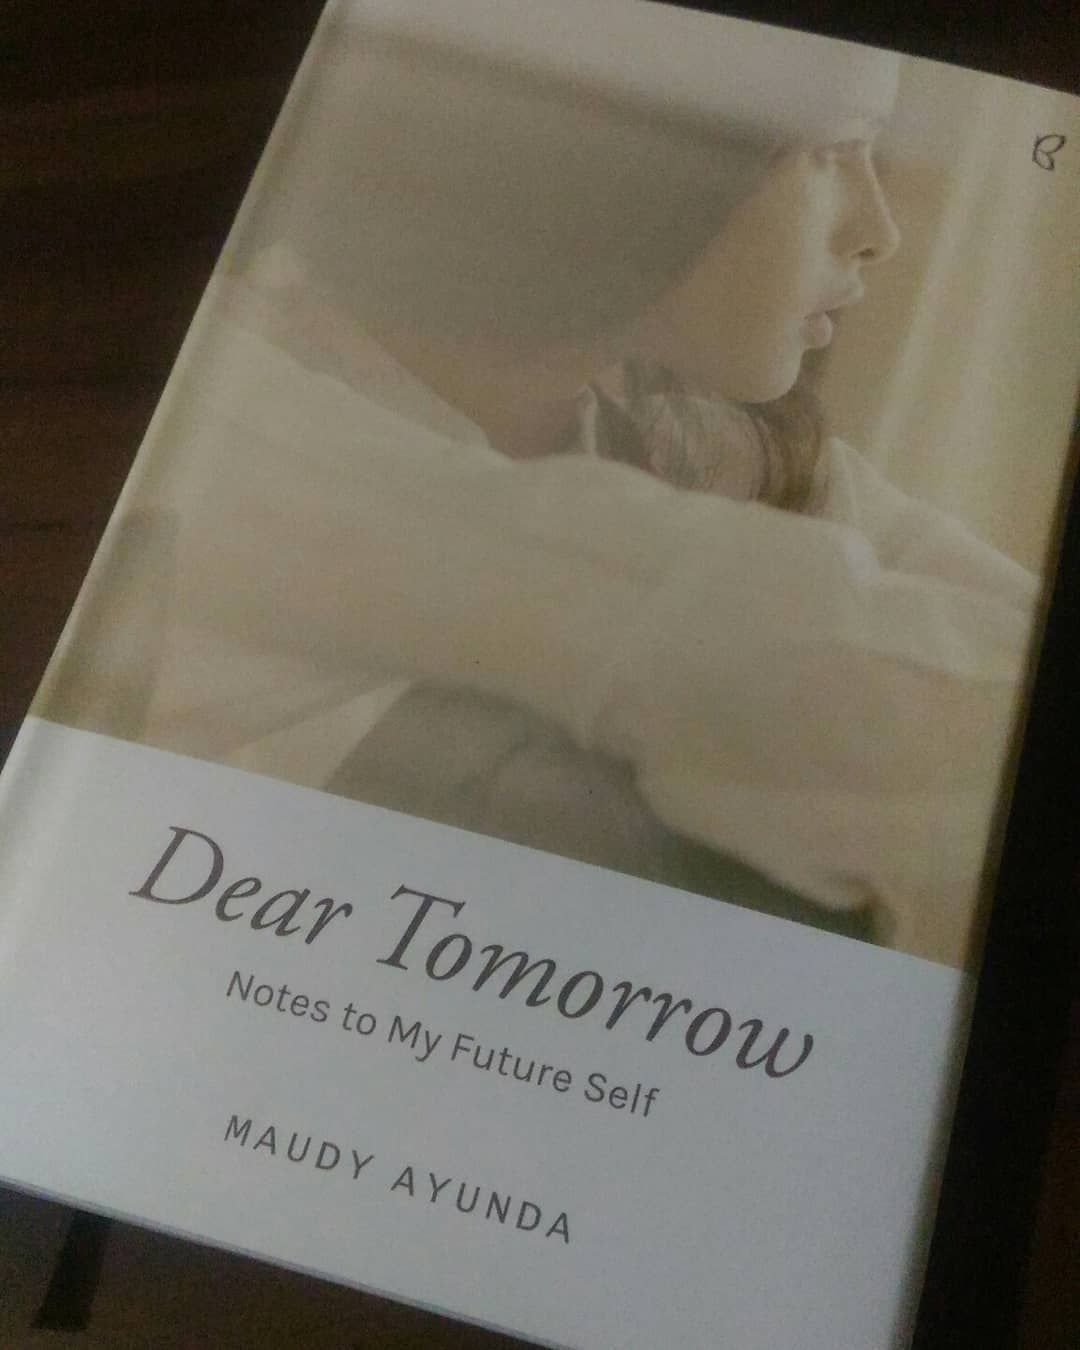 Buku Dear Tomorrow karya Maudy Ayunda